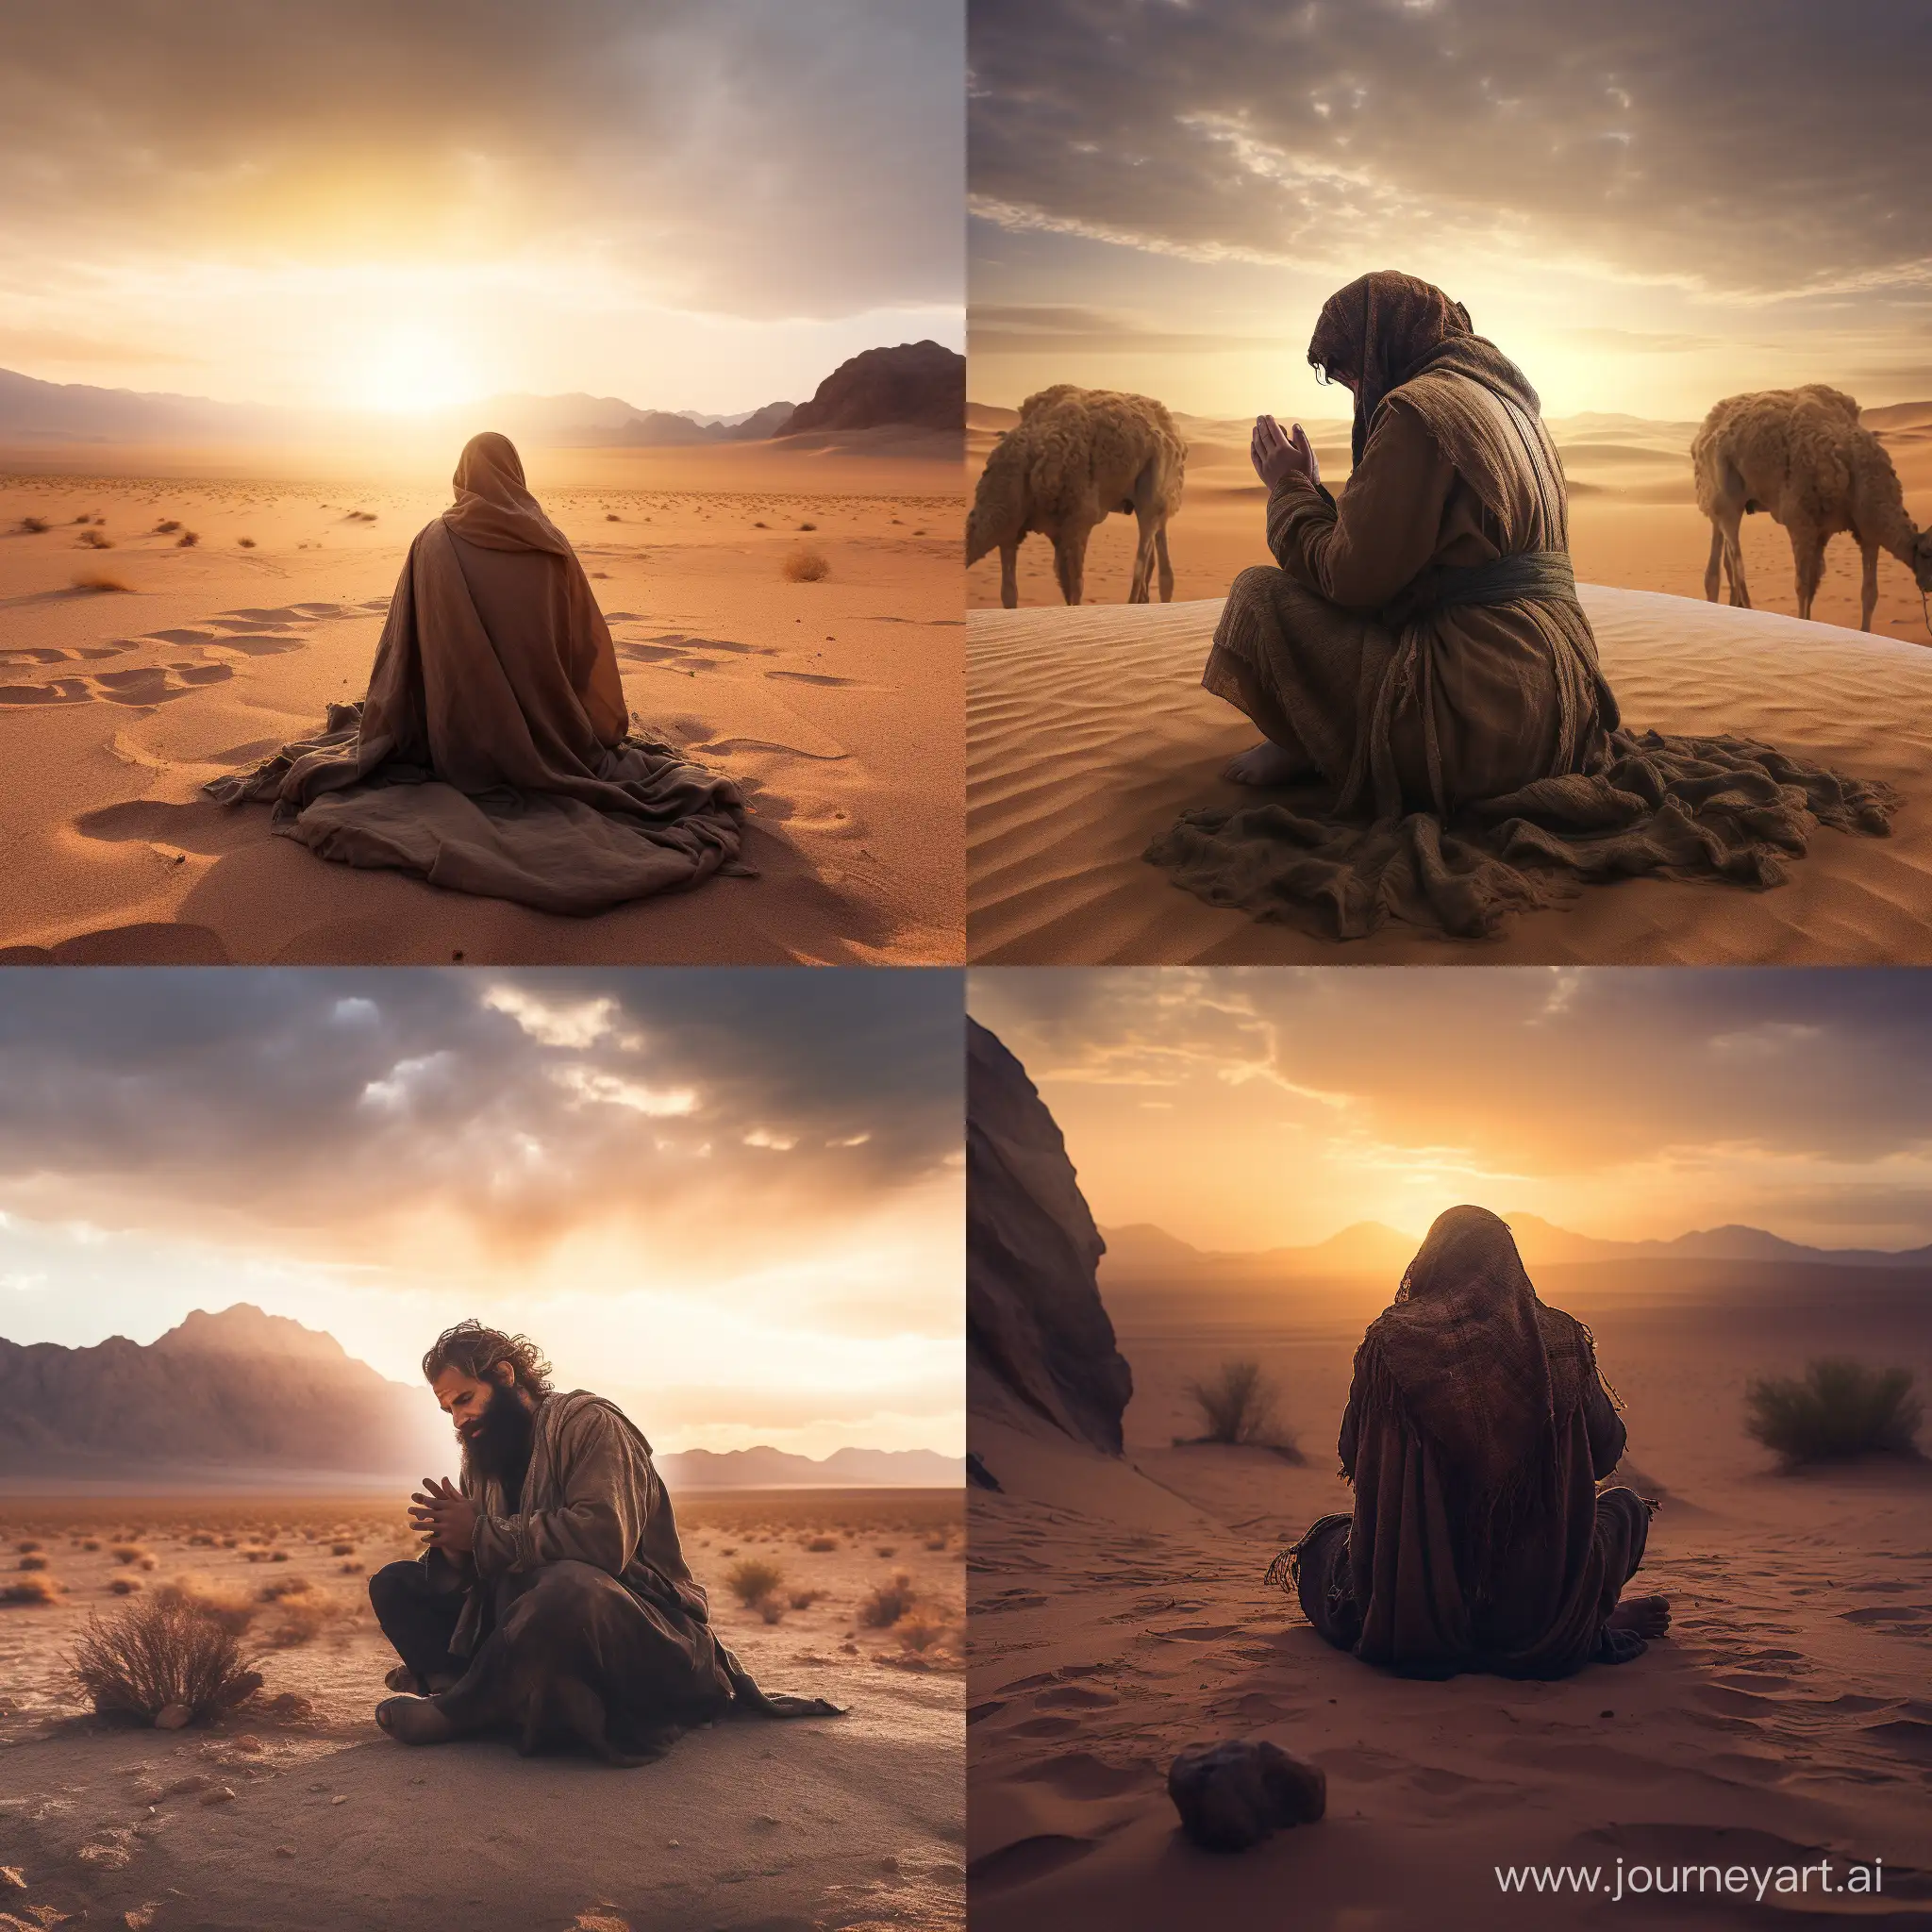 desert dweller praying to God in desert